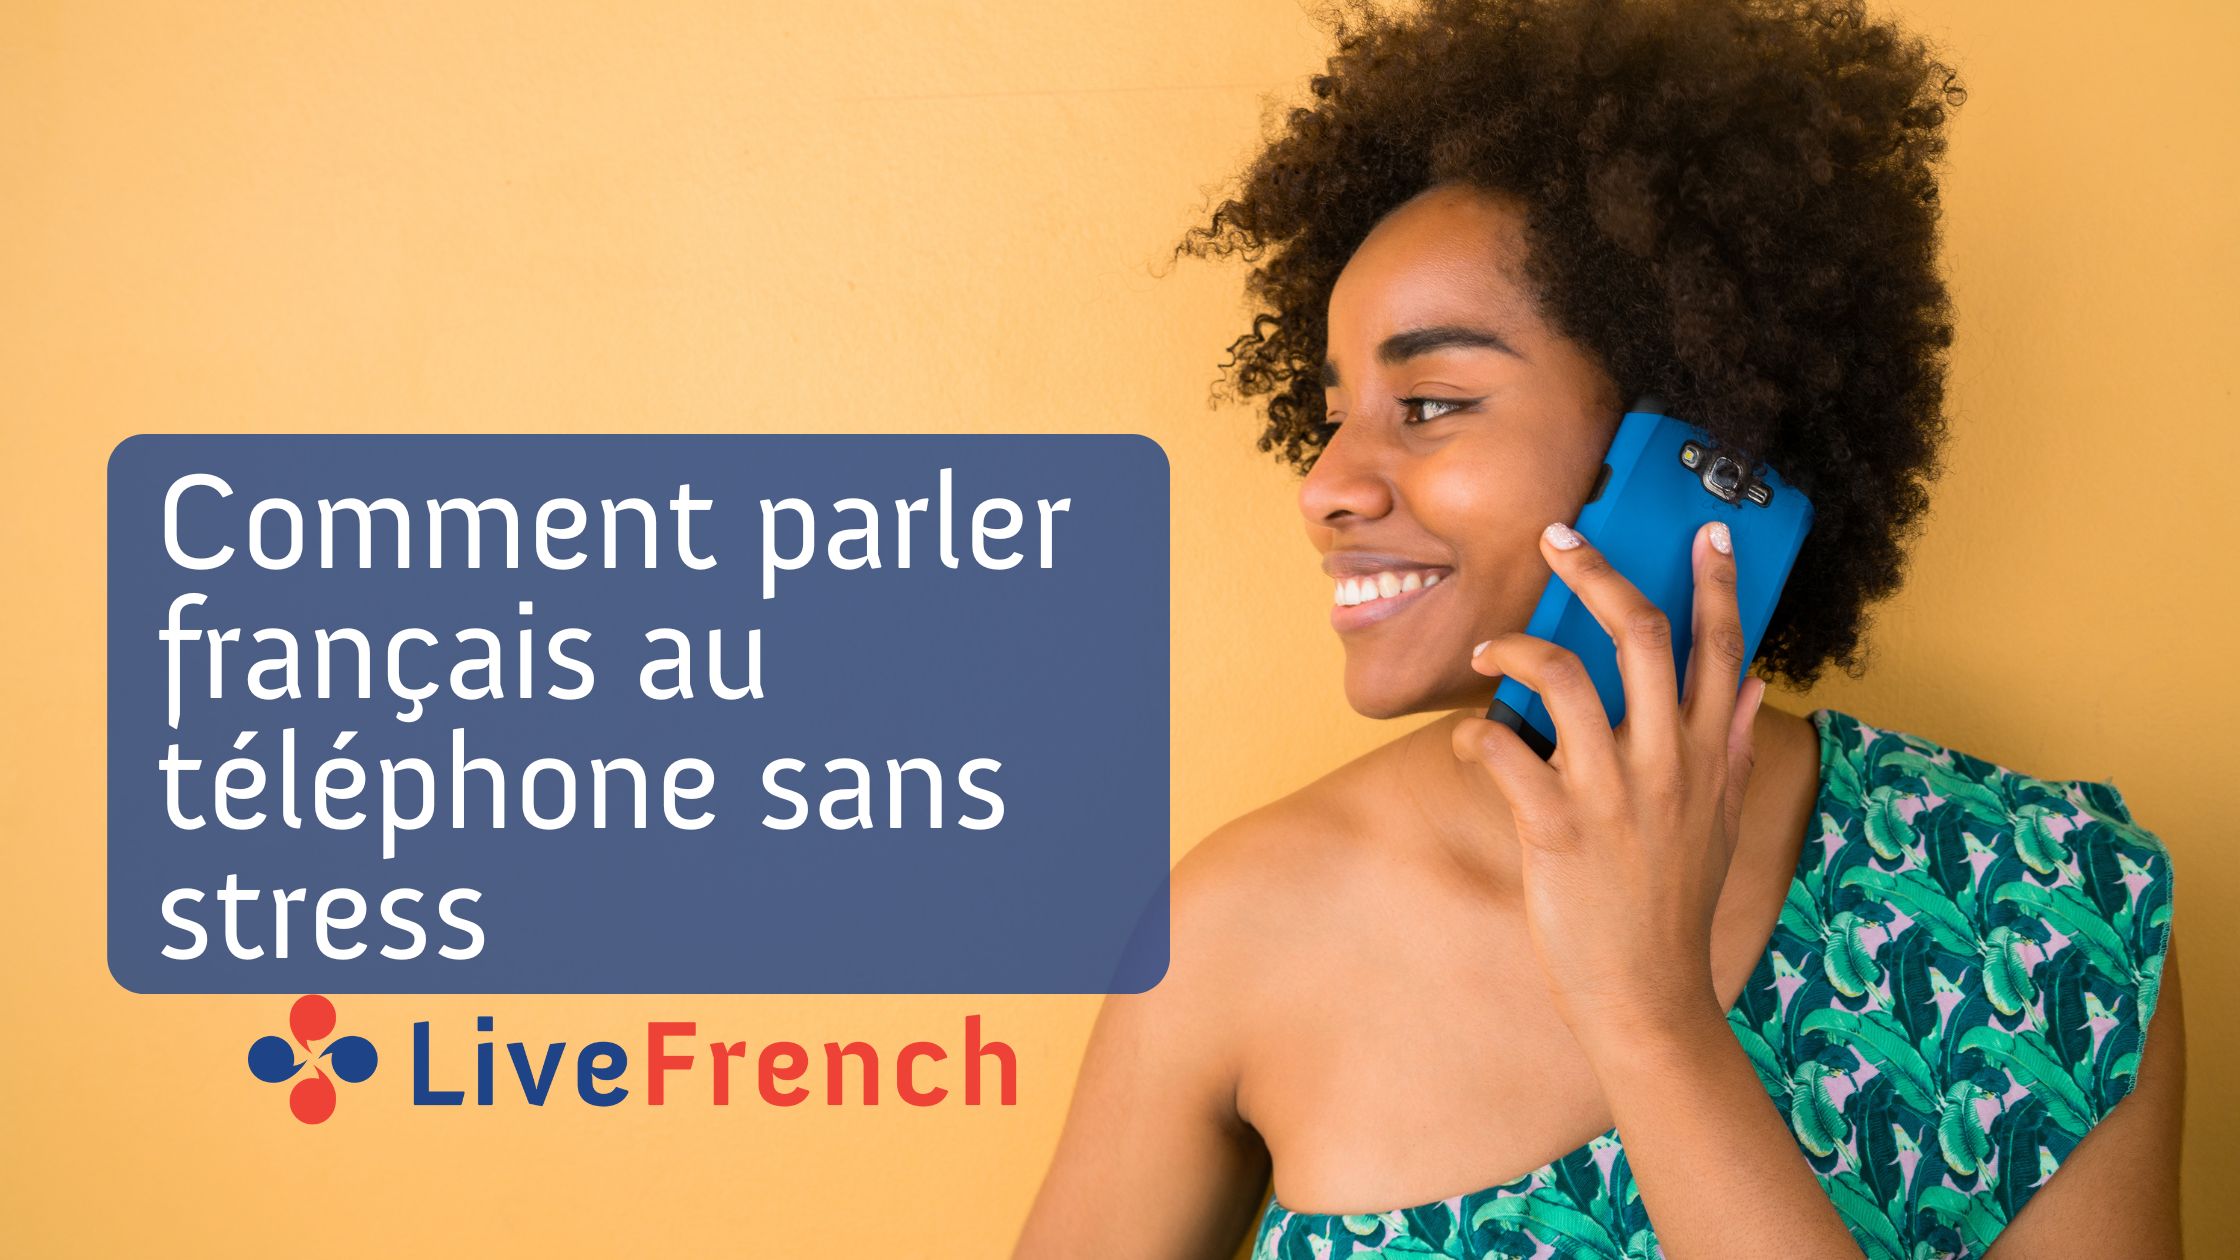 Parler français couramment - Apprenez le français avec des dialogues